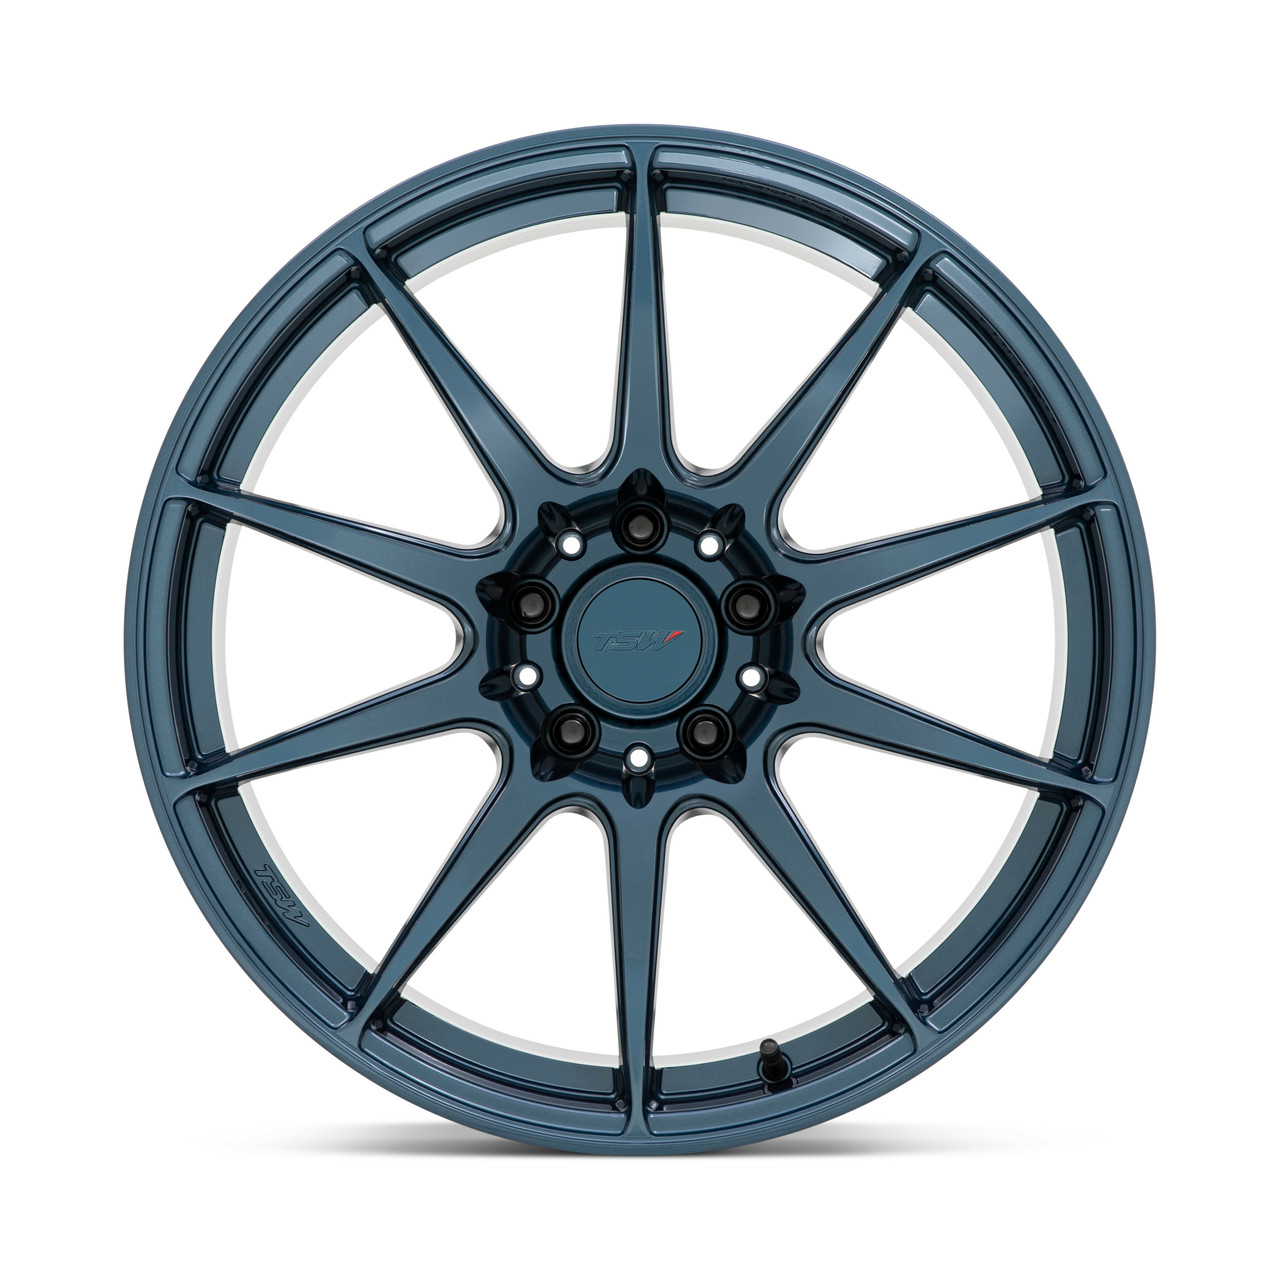 Set 4 TSW Kemora 18x8 5x4.5 Gloss Dark Blue Wheels 18" 35mm Rims